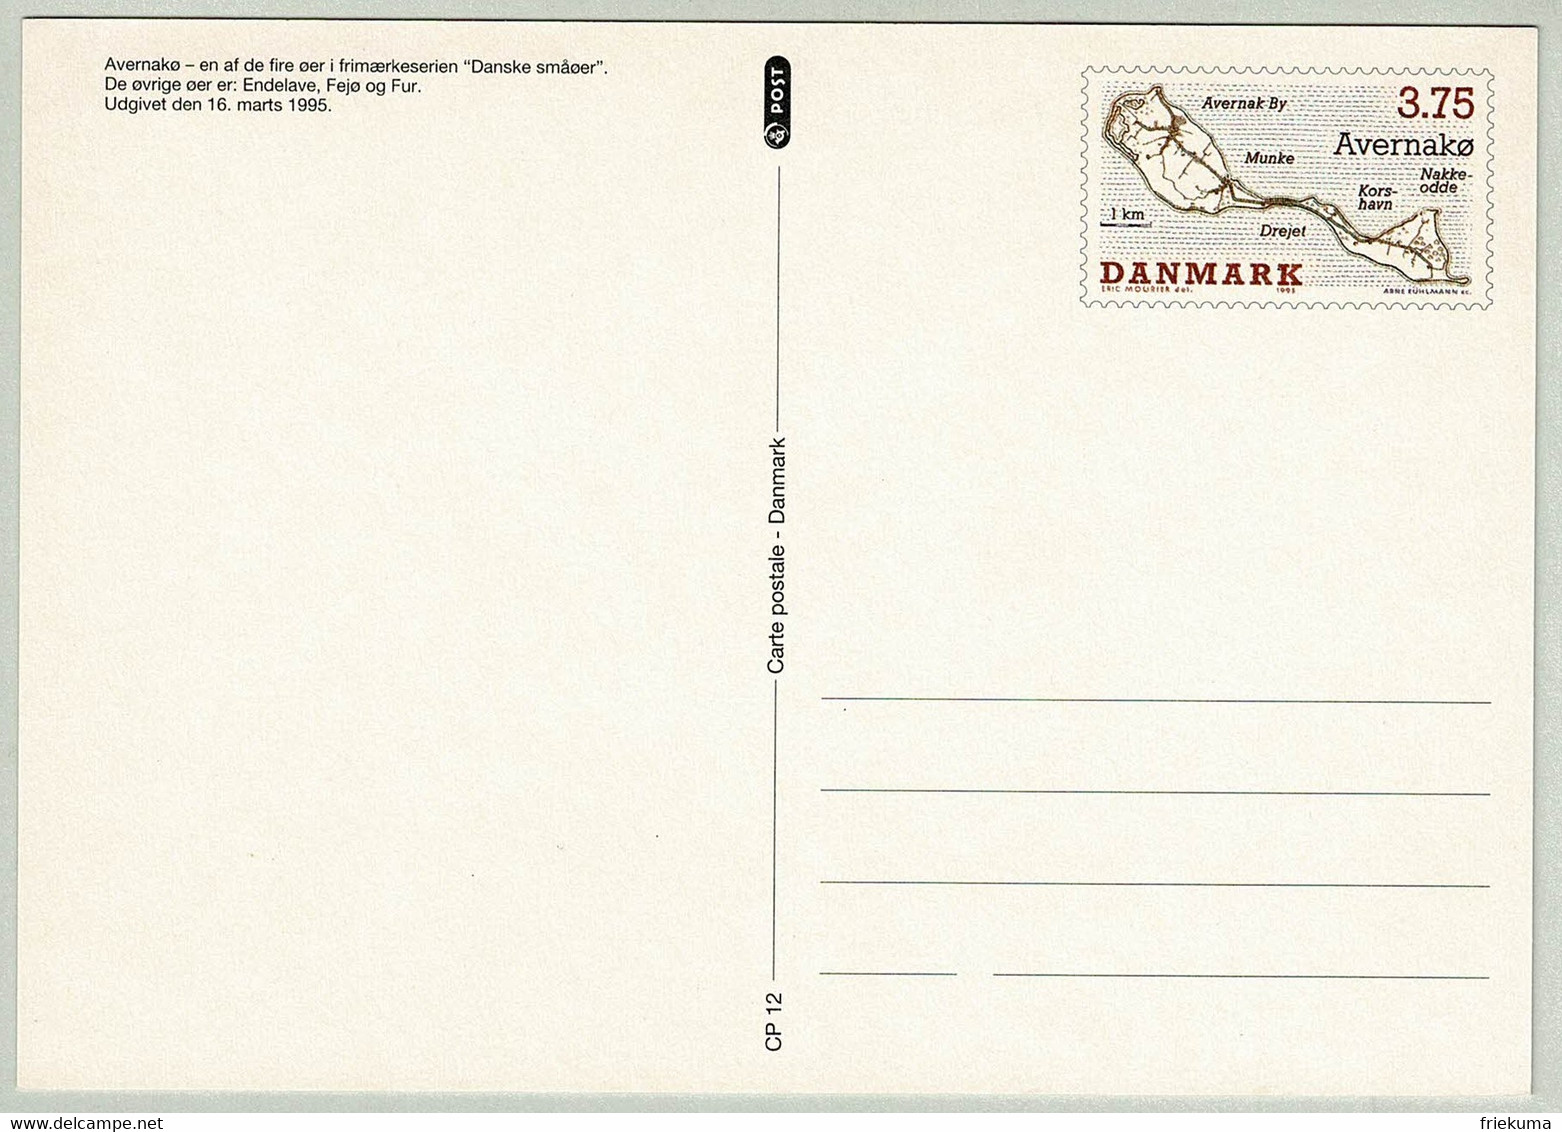 Dänemark / Danmark 1995, Ganzsachenkarte Avernako, Insel / Ile / Island - Islands